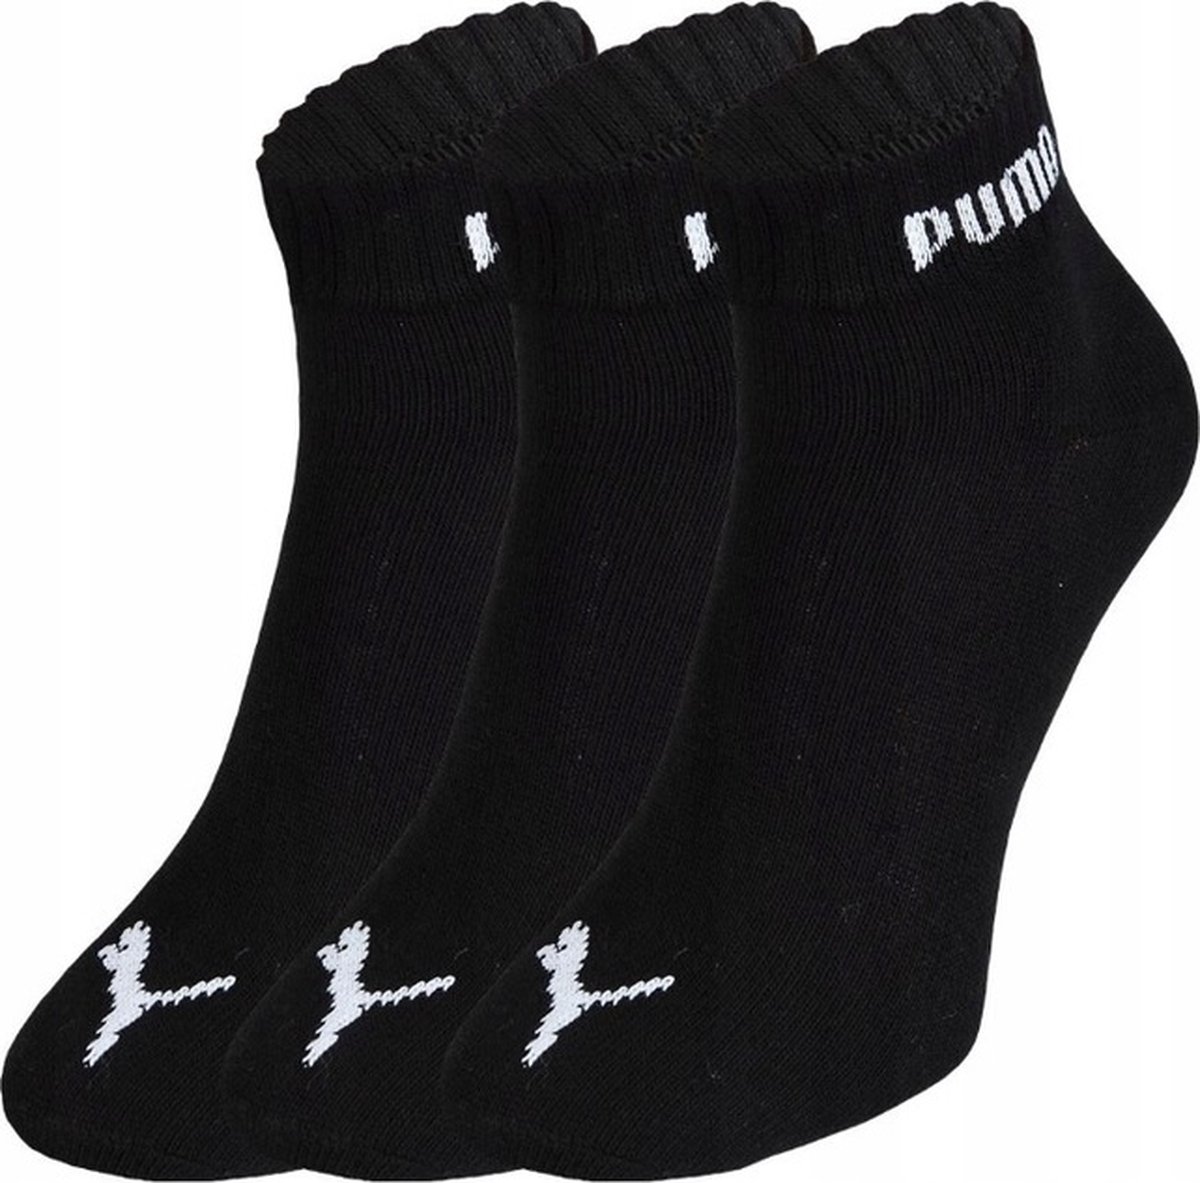 PUMA - Unisex - Zwart- Maat 43 - 46 cm - Sokken voor Heren/Dames - Sport - QUARTER - Korte sokken - ( 3 - pack ) - PUMA